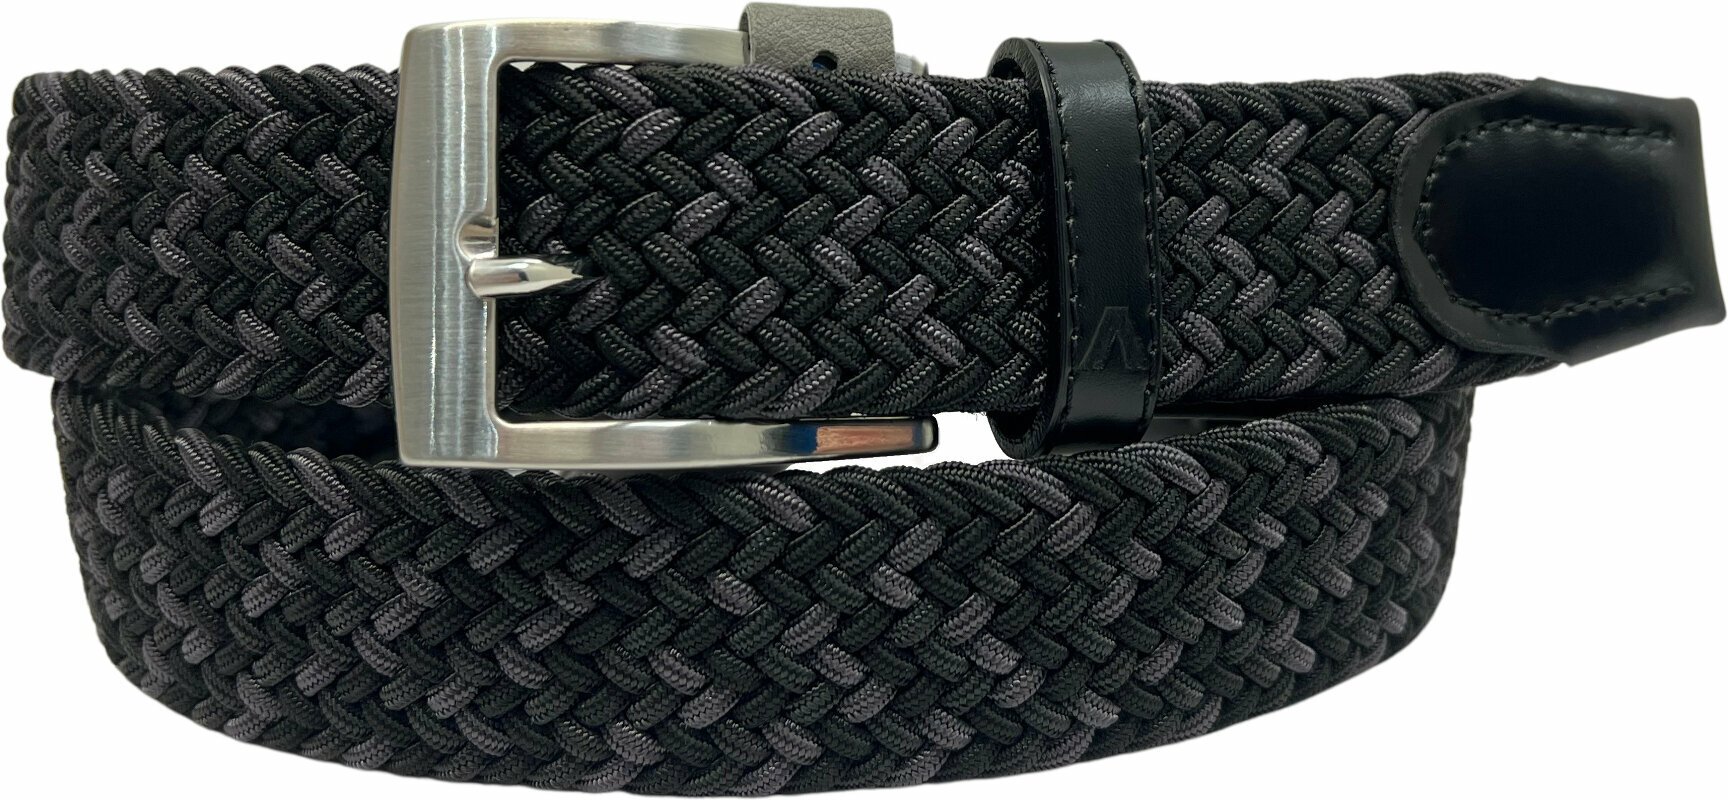 Belt Alberto Gürtel Multicolor Braided Belt Black/Grey 100